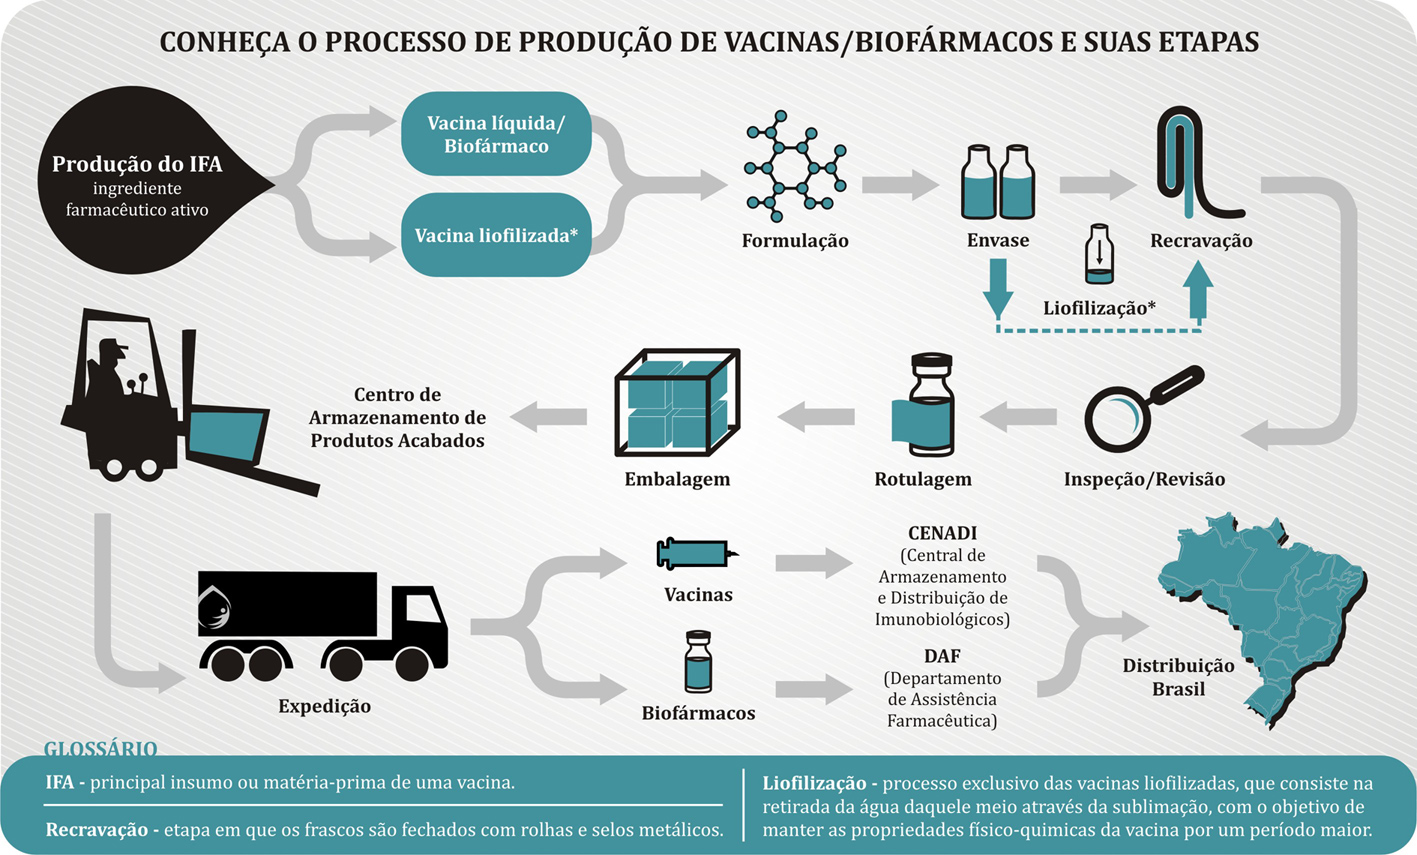 info-processo-de-produção-vacina-biofármaco